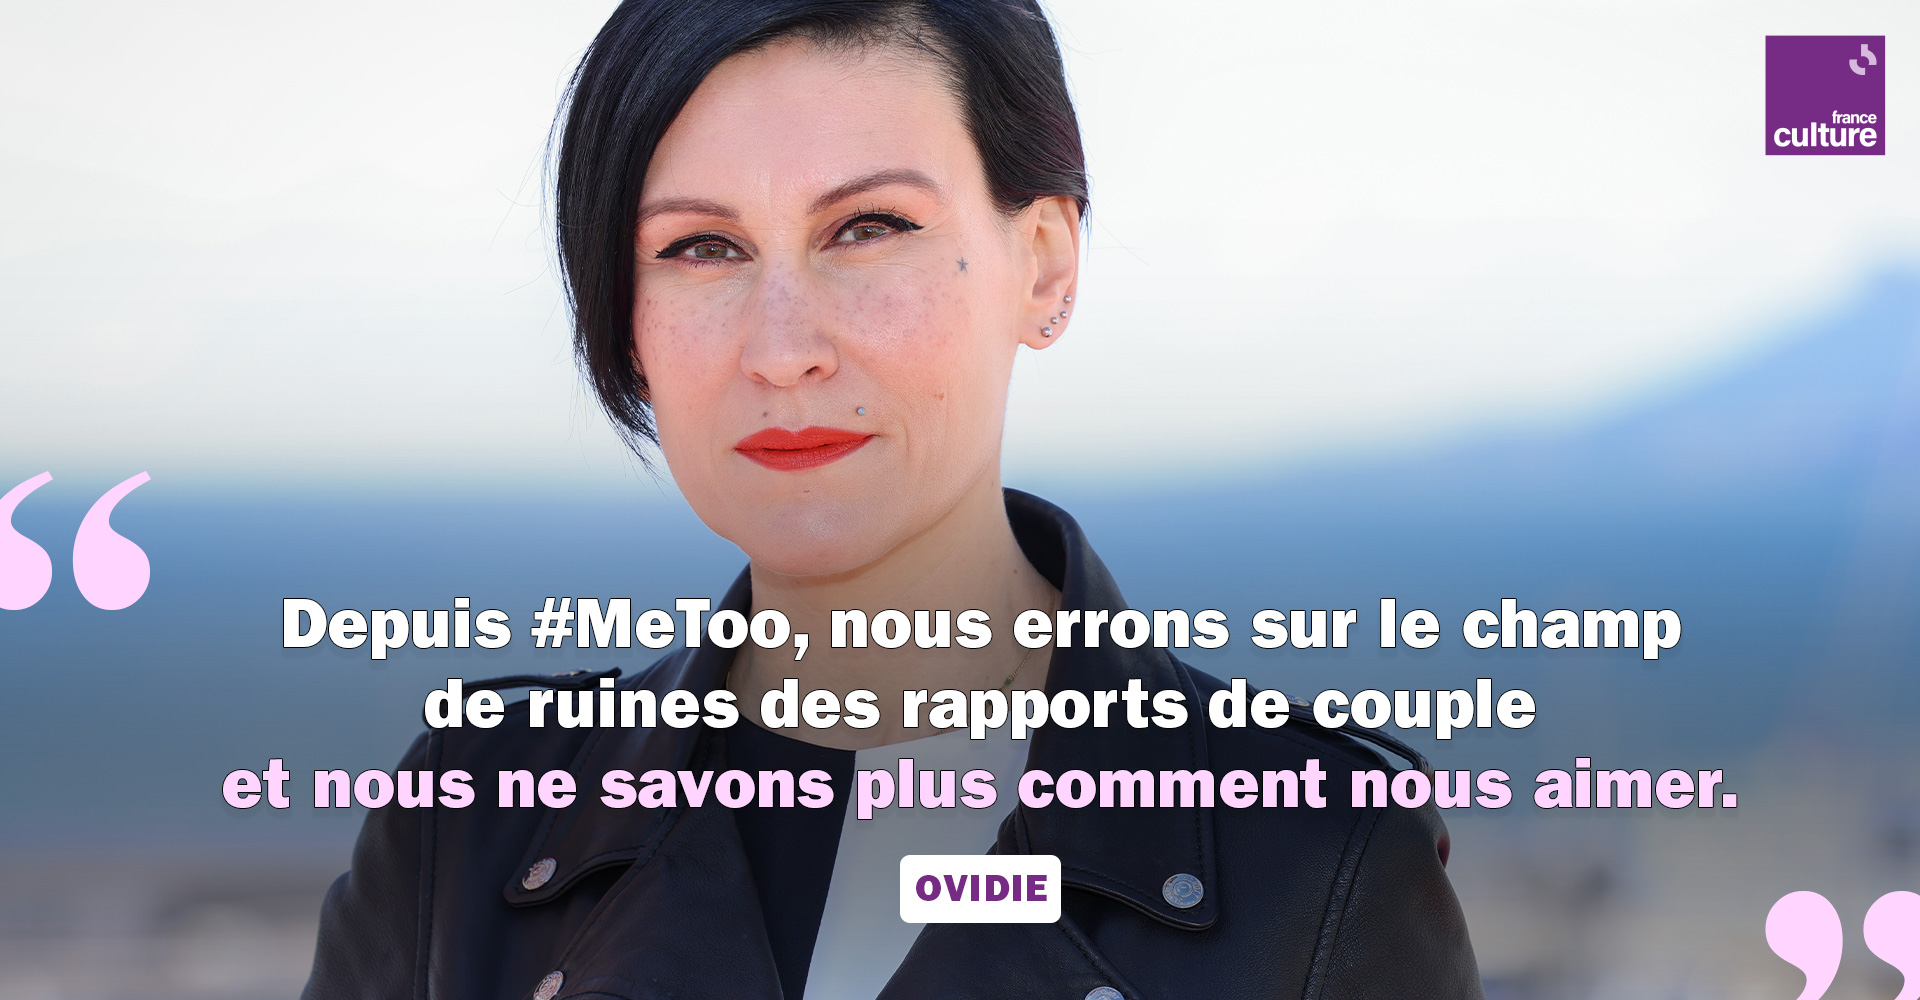 France Culture On Twitter 💘 Quest Ce Qui Pourrait Sauver Lamour Cest La Question Qui A 